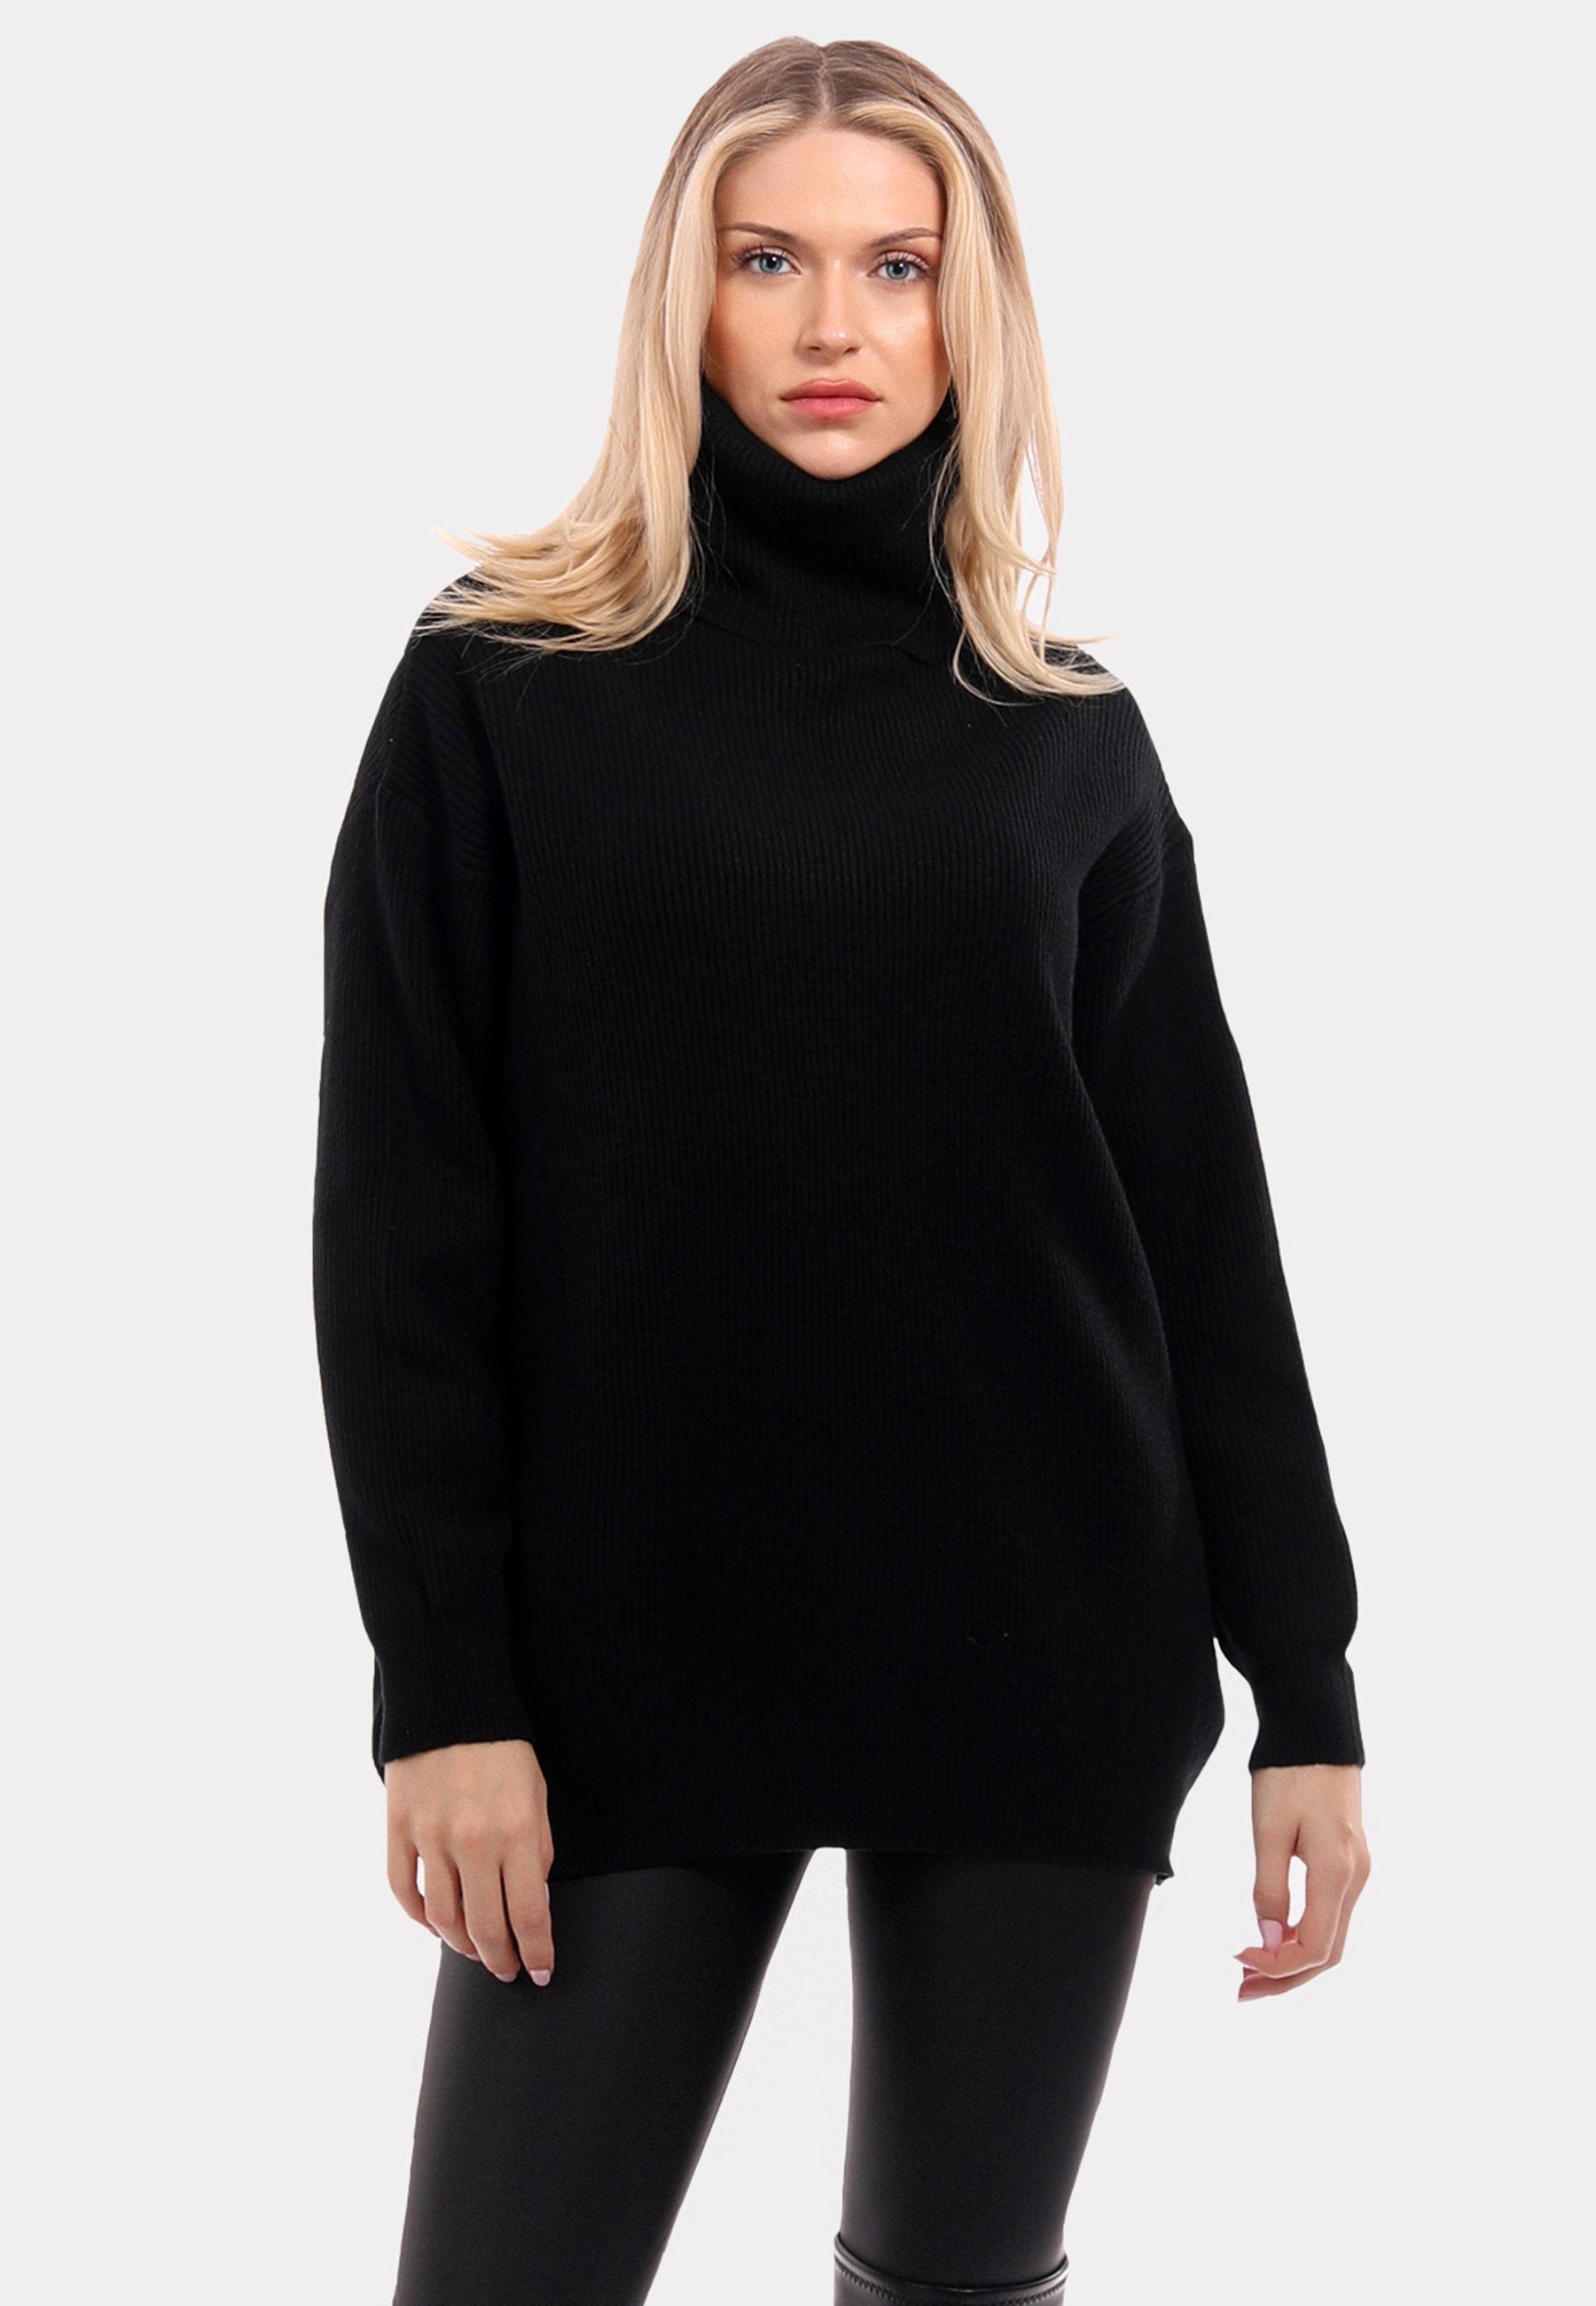 YC Fashion & (1-tlg) in Unifarbe Sweater schwarz Style "Chic " Rollkragenpullover Turtleneck